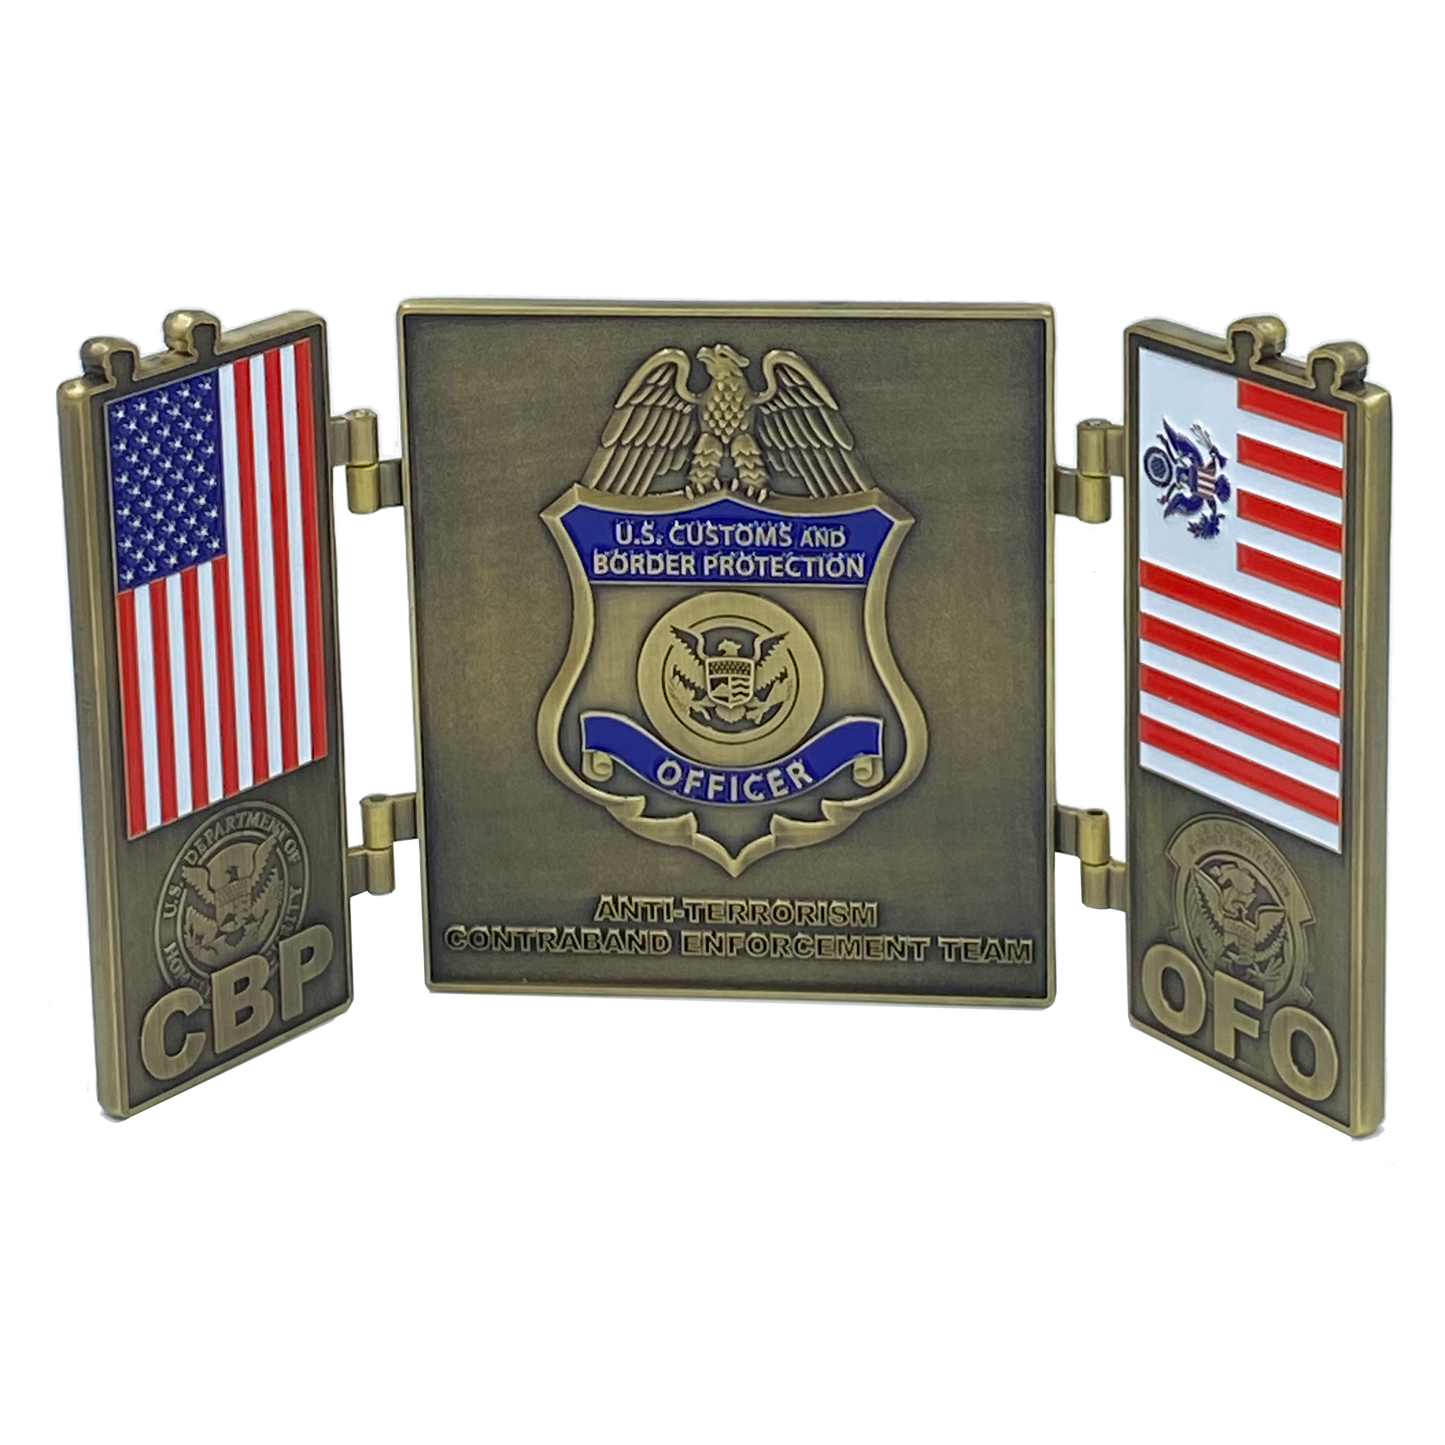 EL5-013 CBP CET Anti-Terrorism Contraband Enforcement Team CET A-TCET Field Ops Challenge Coin Port of Entry Seaport Airport